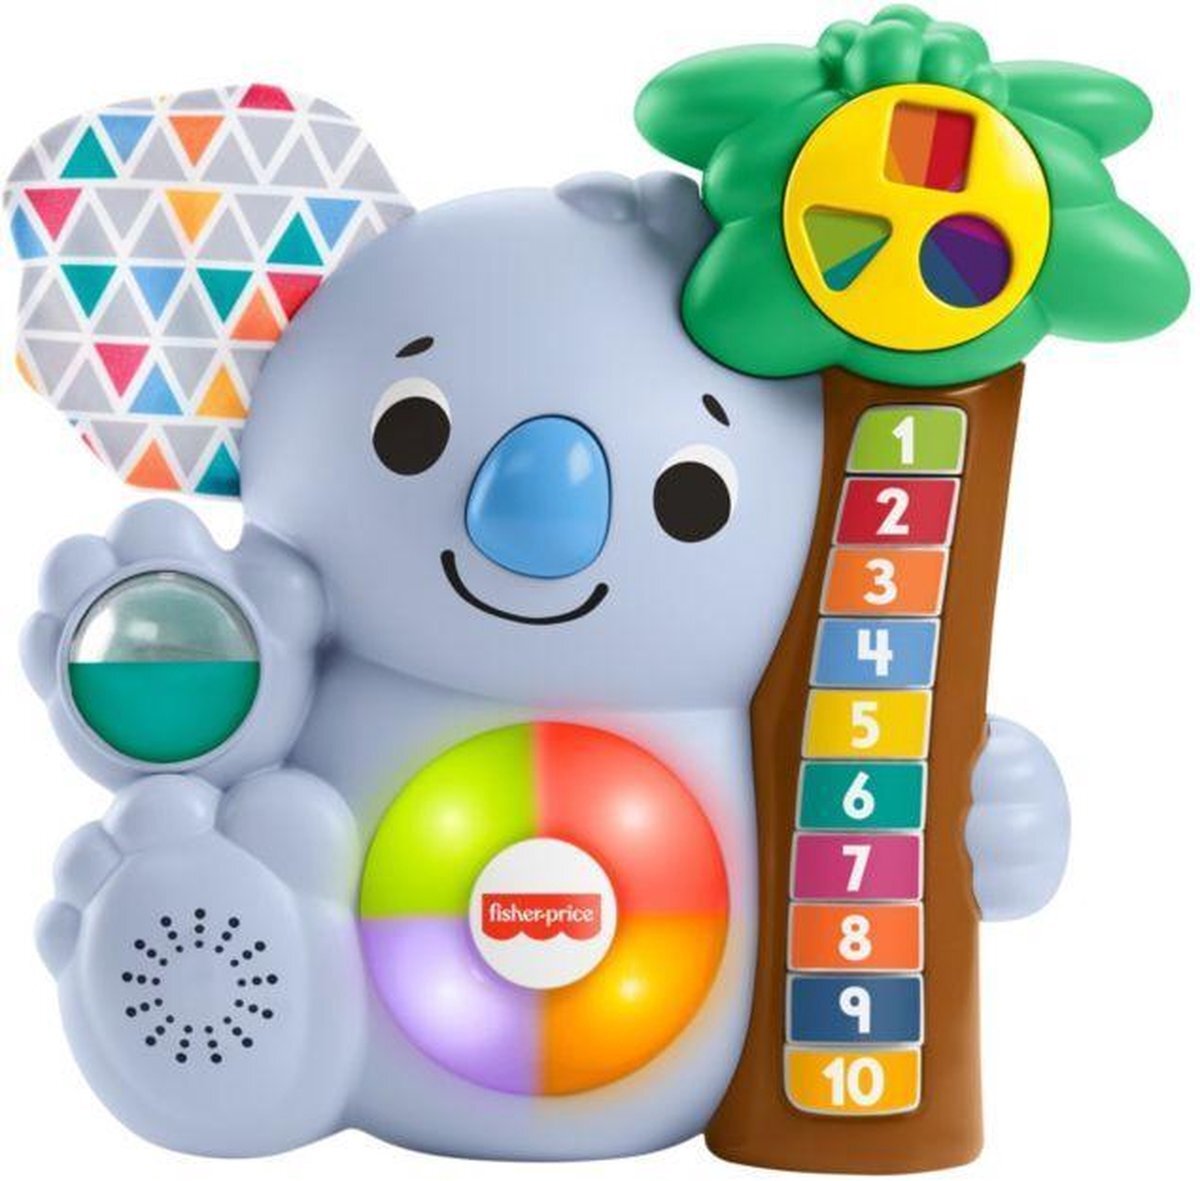 Fisher-Price Little People - Interactieve Koala voor Kinderen - Spelend Leren - Speelgoed - Interactieve teddybeer - Linkimals